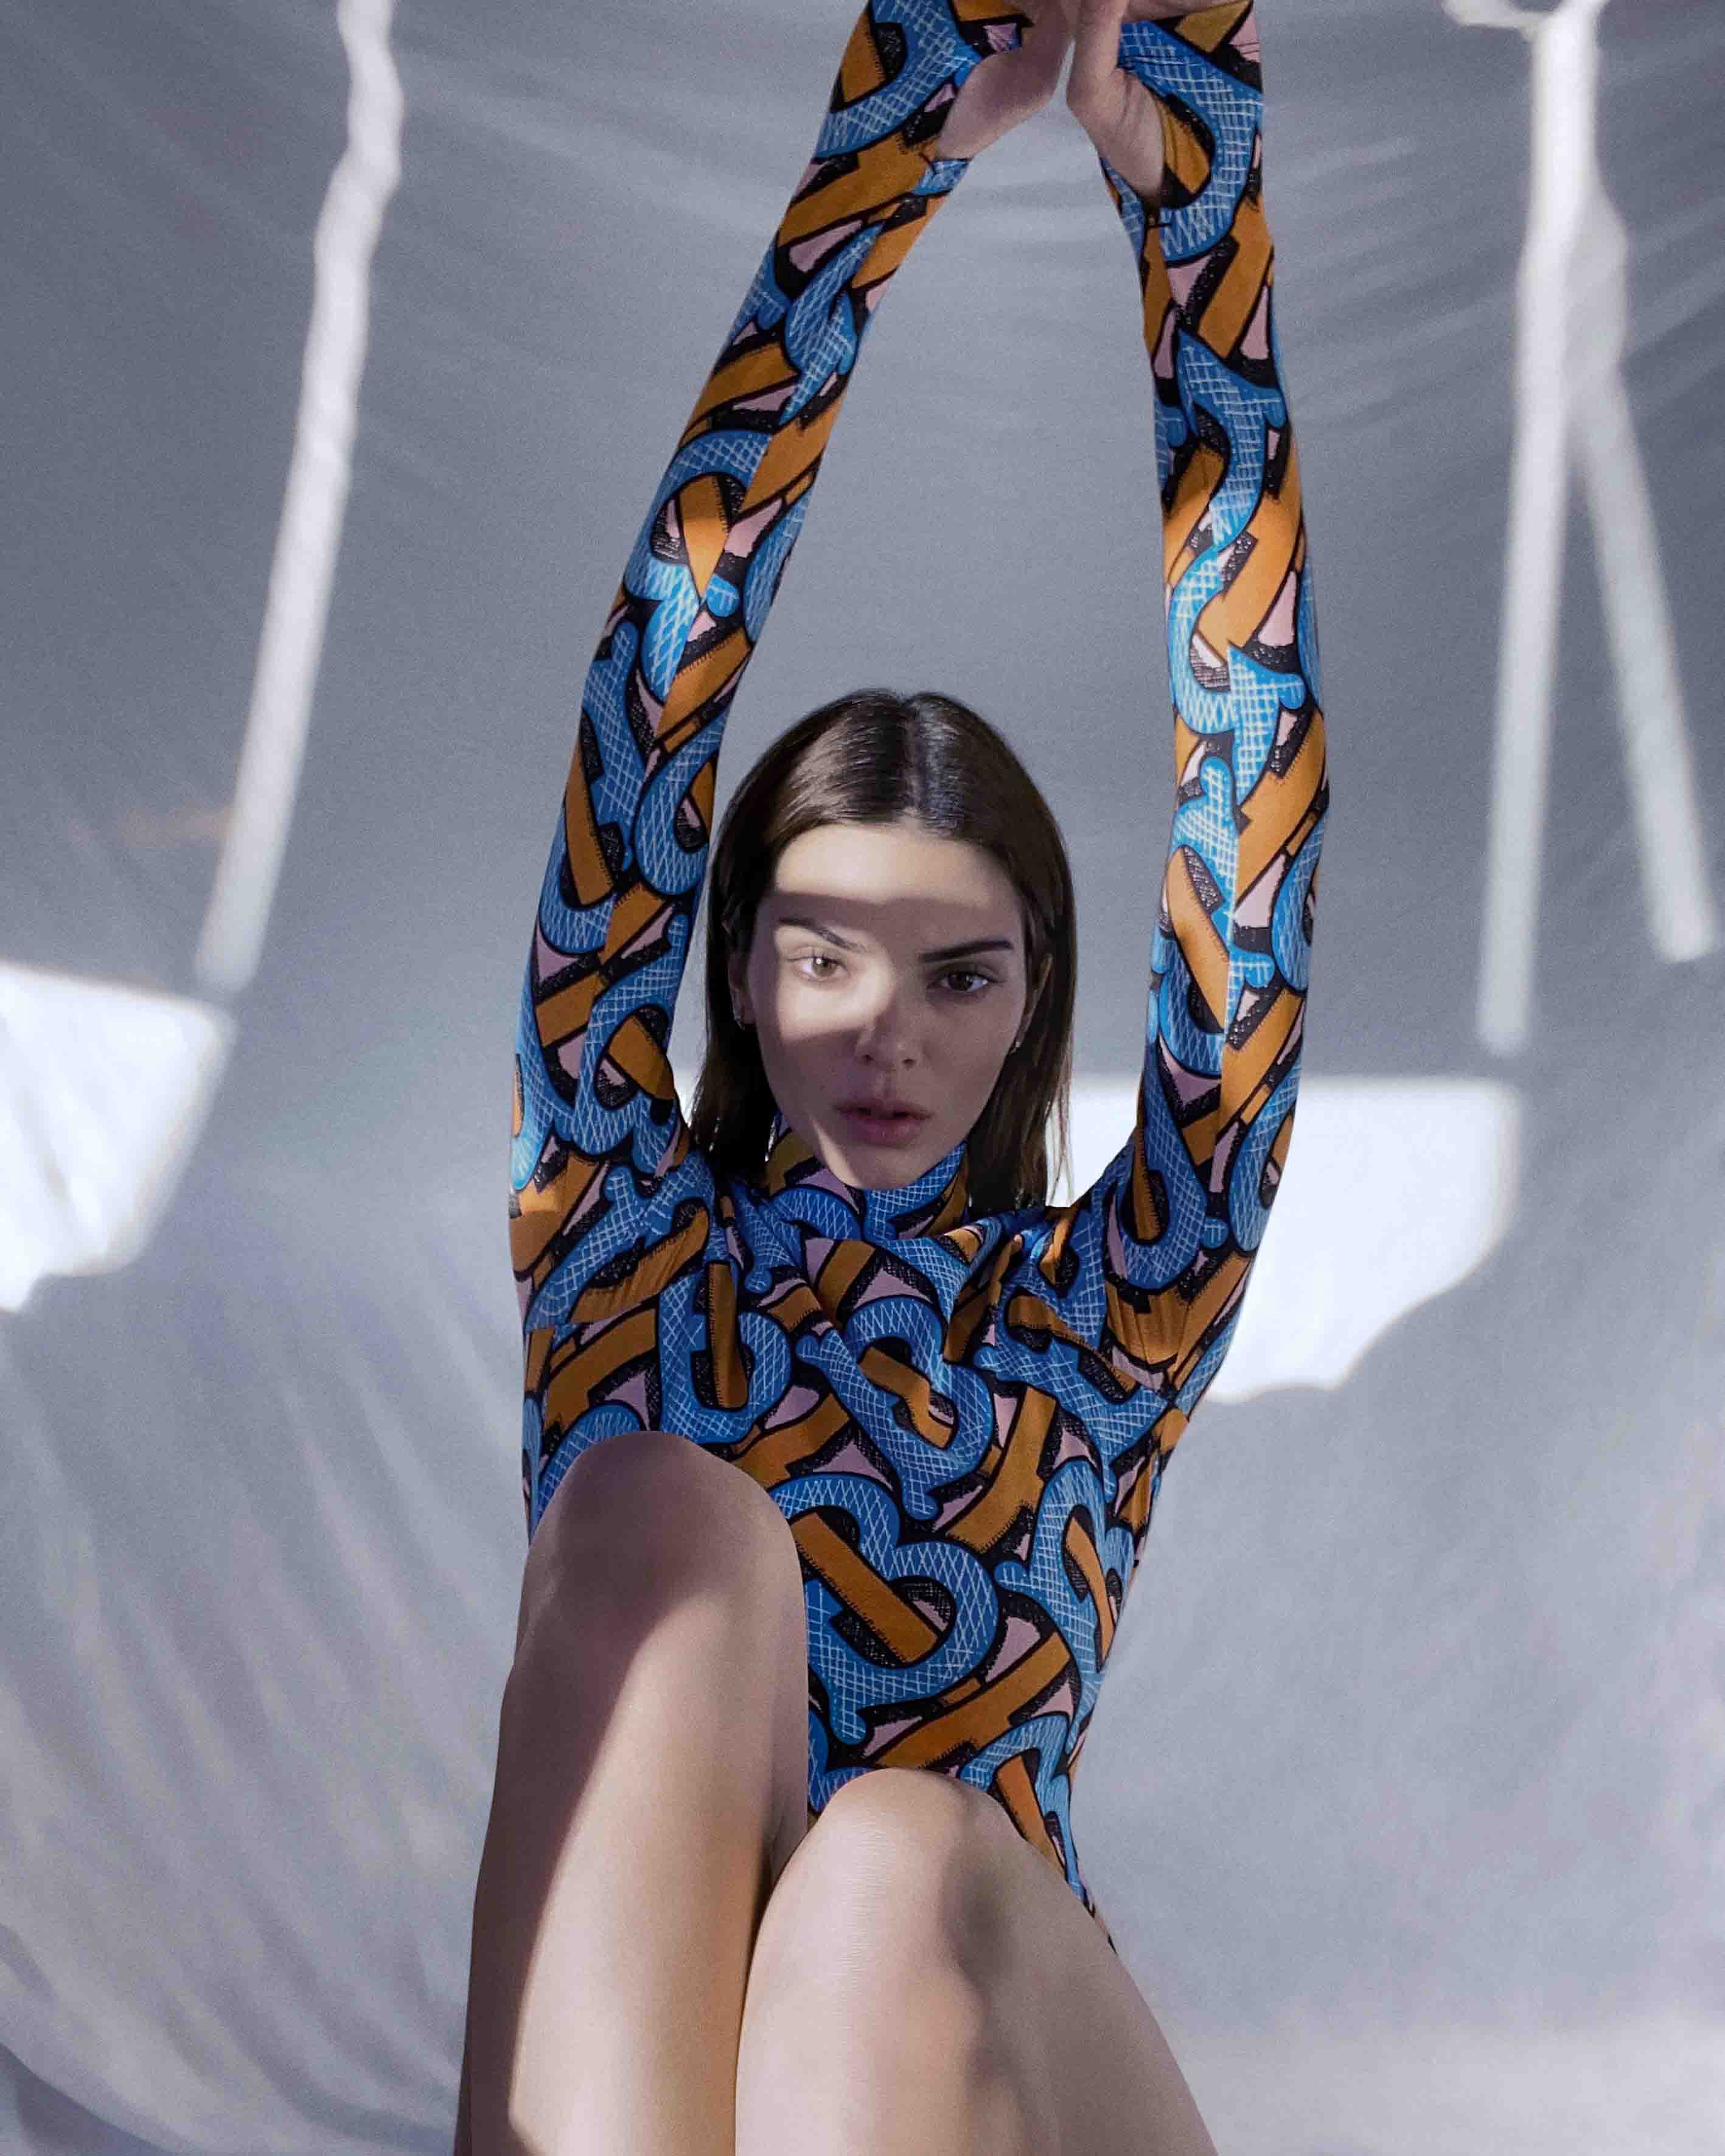 Photos n°7 : Kendall Jenner the Avatar!